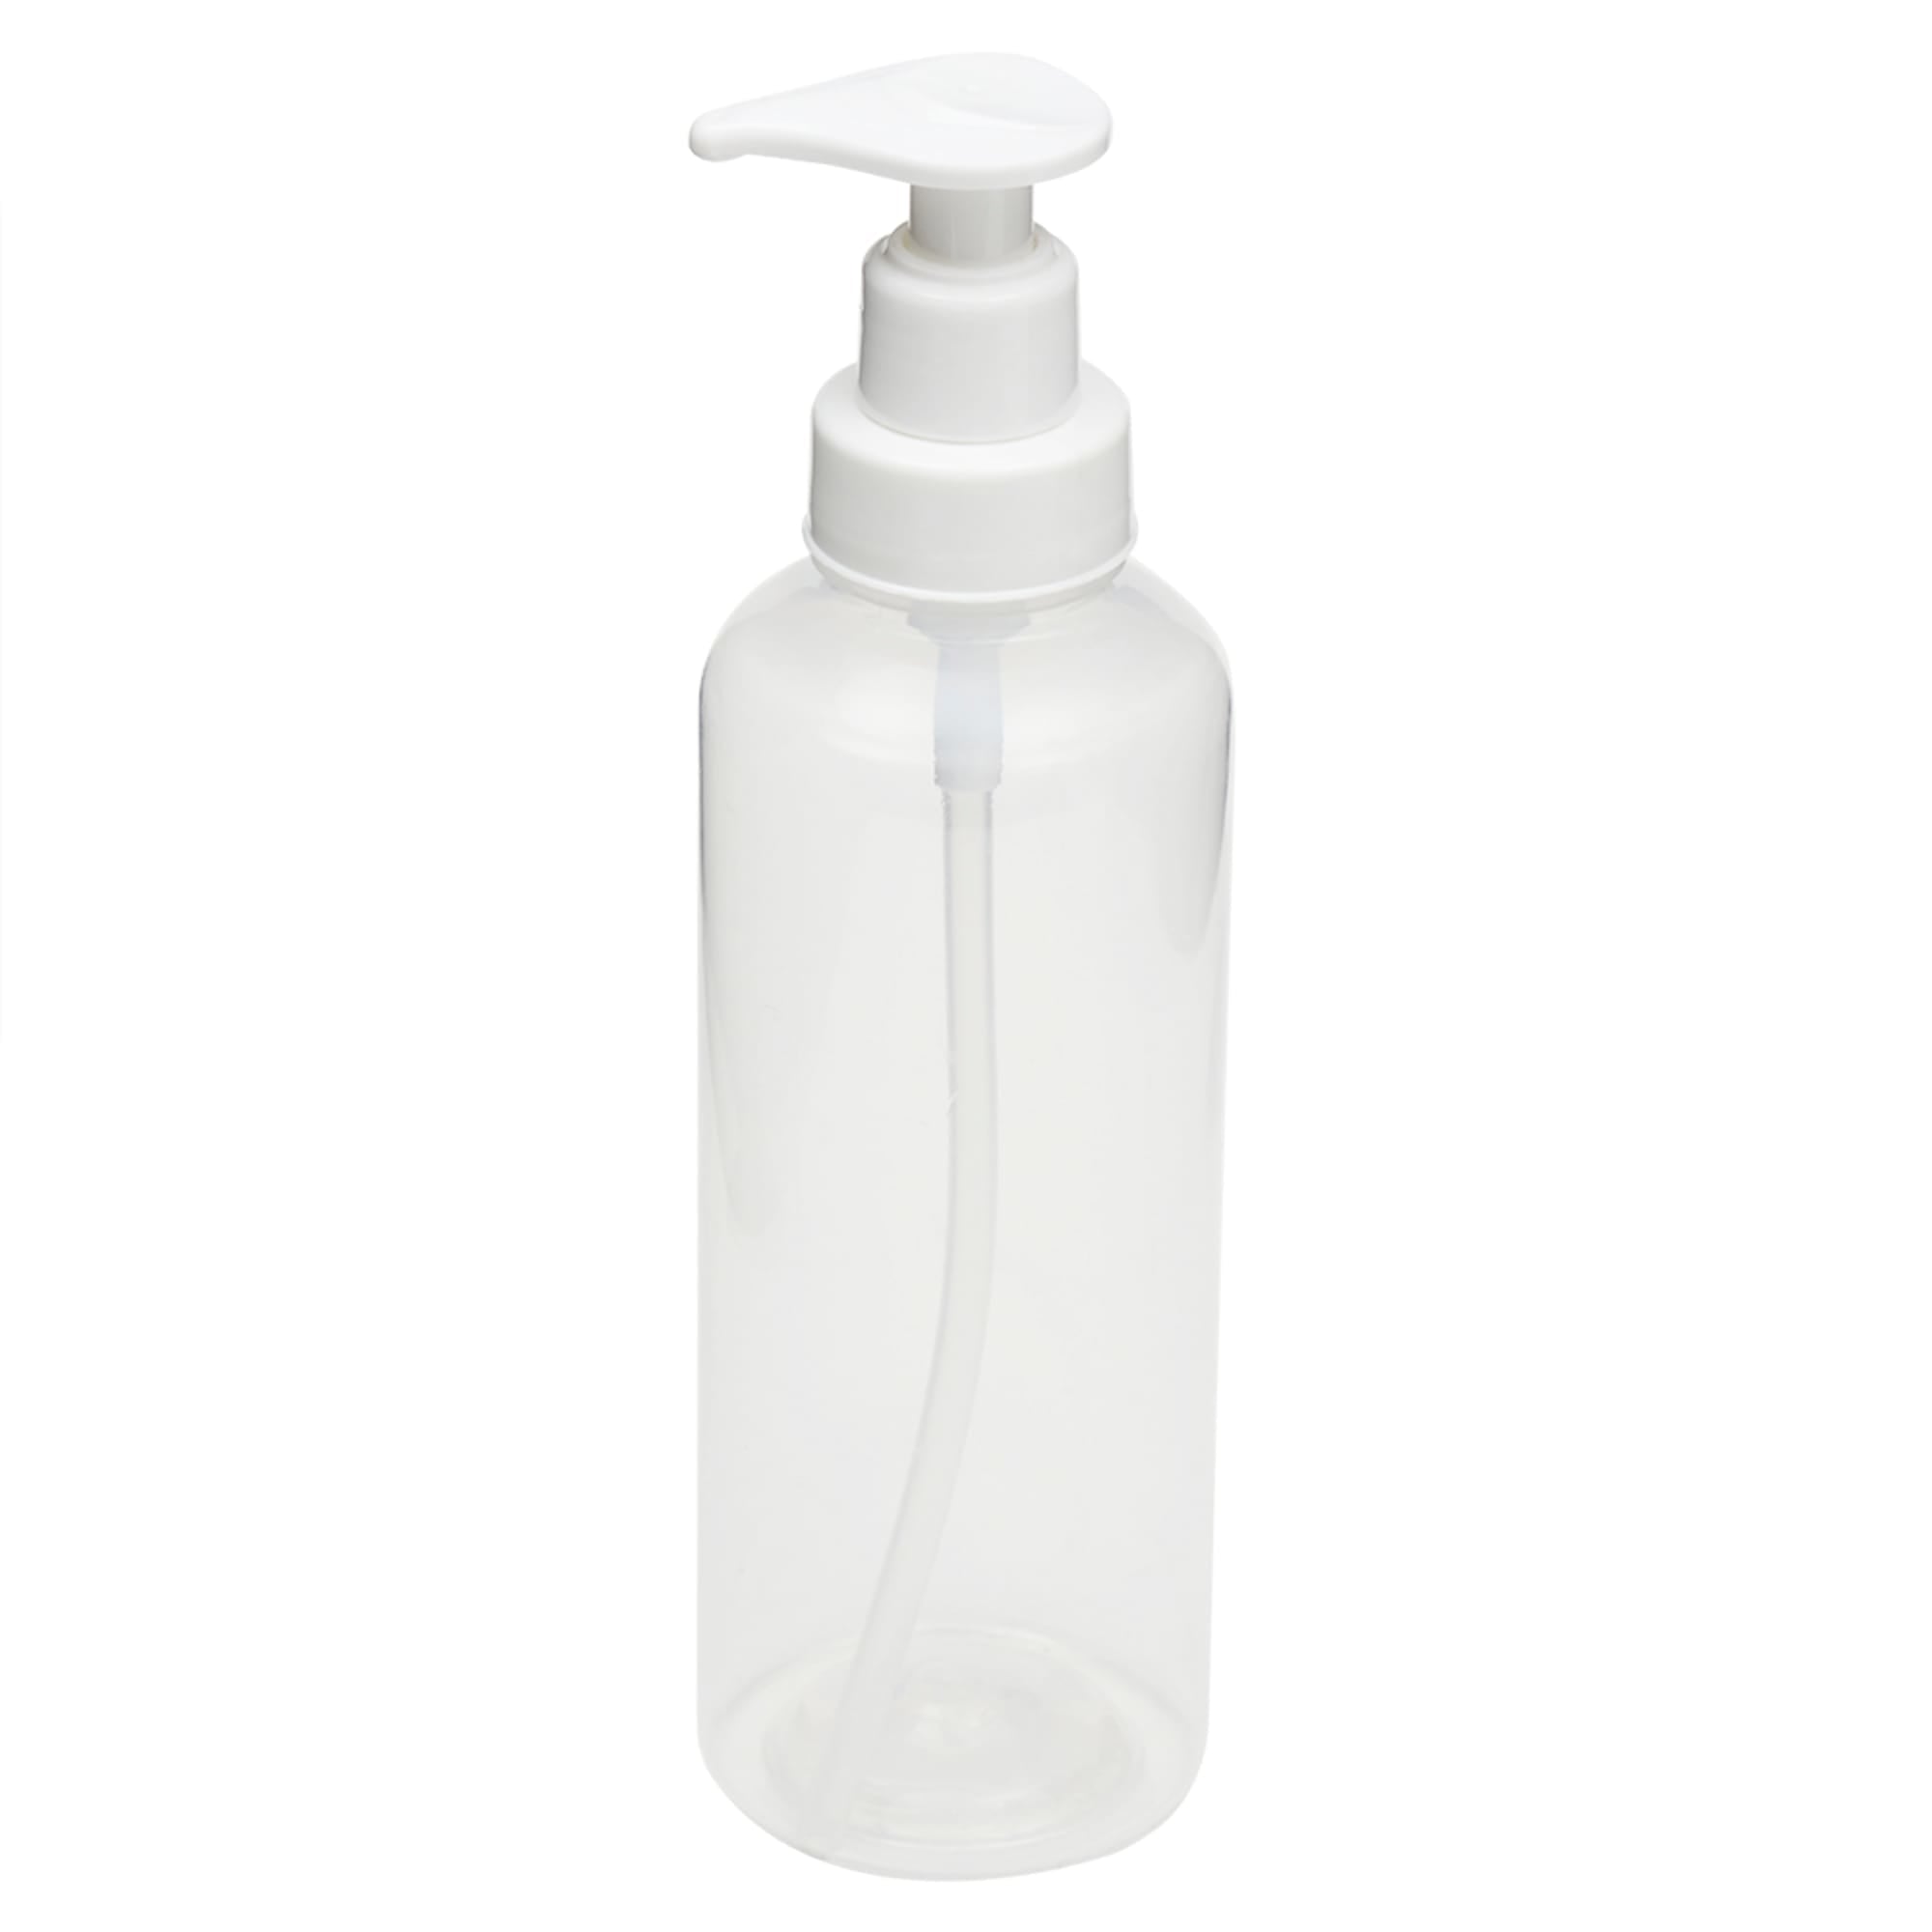 Home Basics Plastic Soap Dispenser $2.00 EACH, CASE PACK OF 10